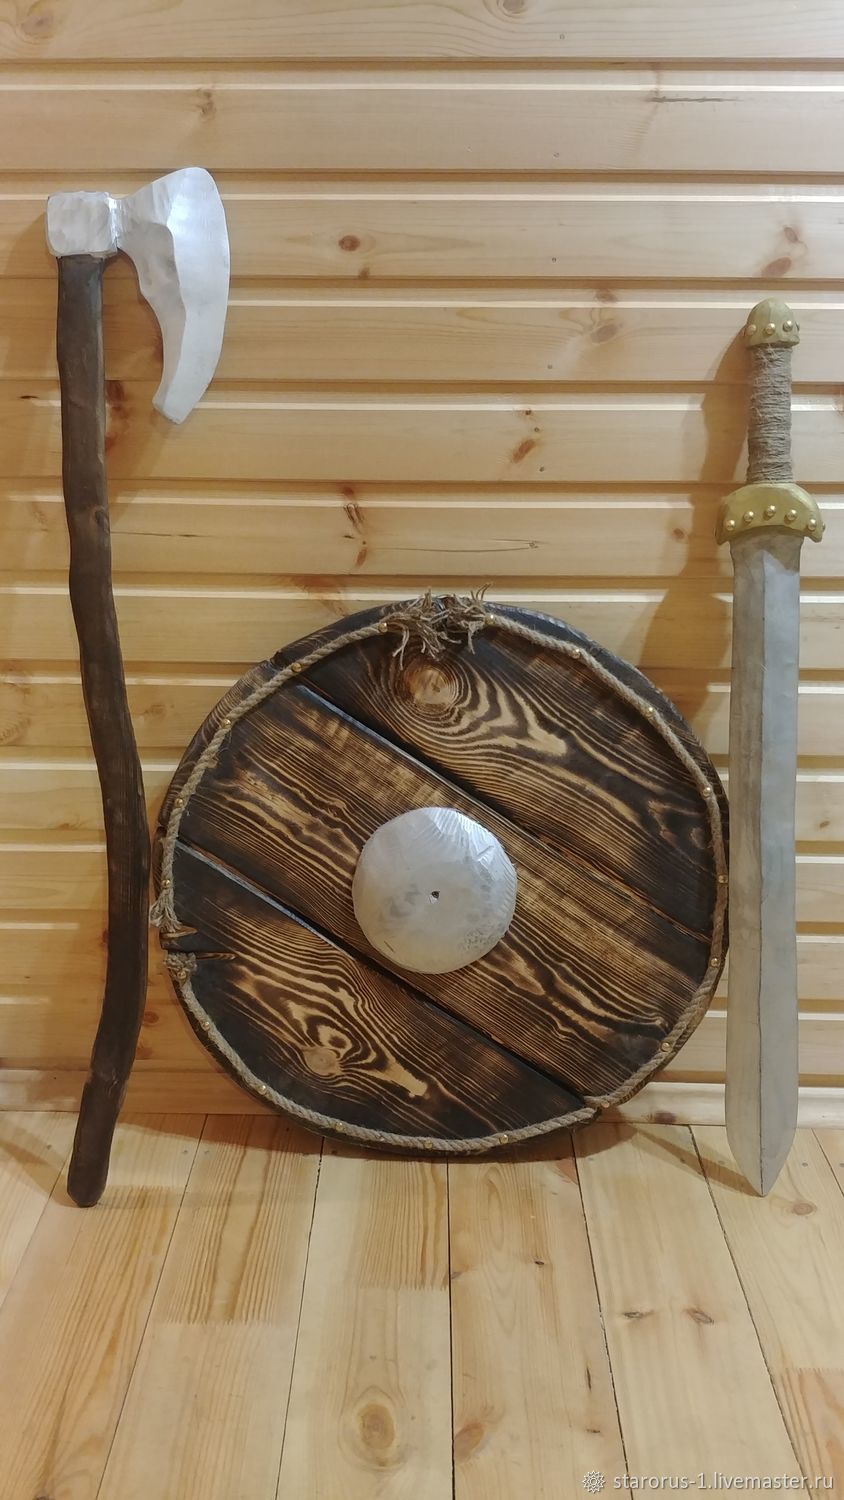 Игрушечный топор для детей - Топор викингов - из бука и липового дерева - описание